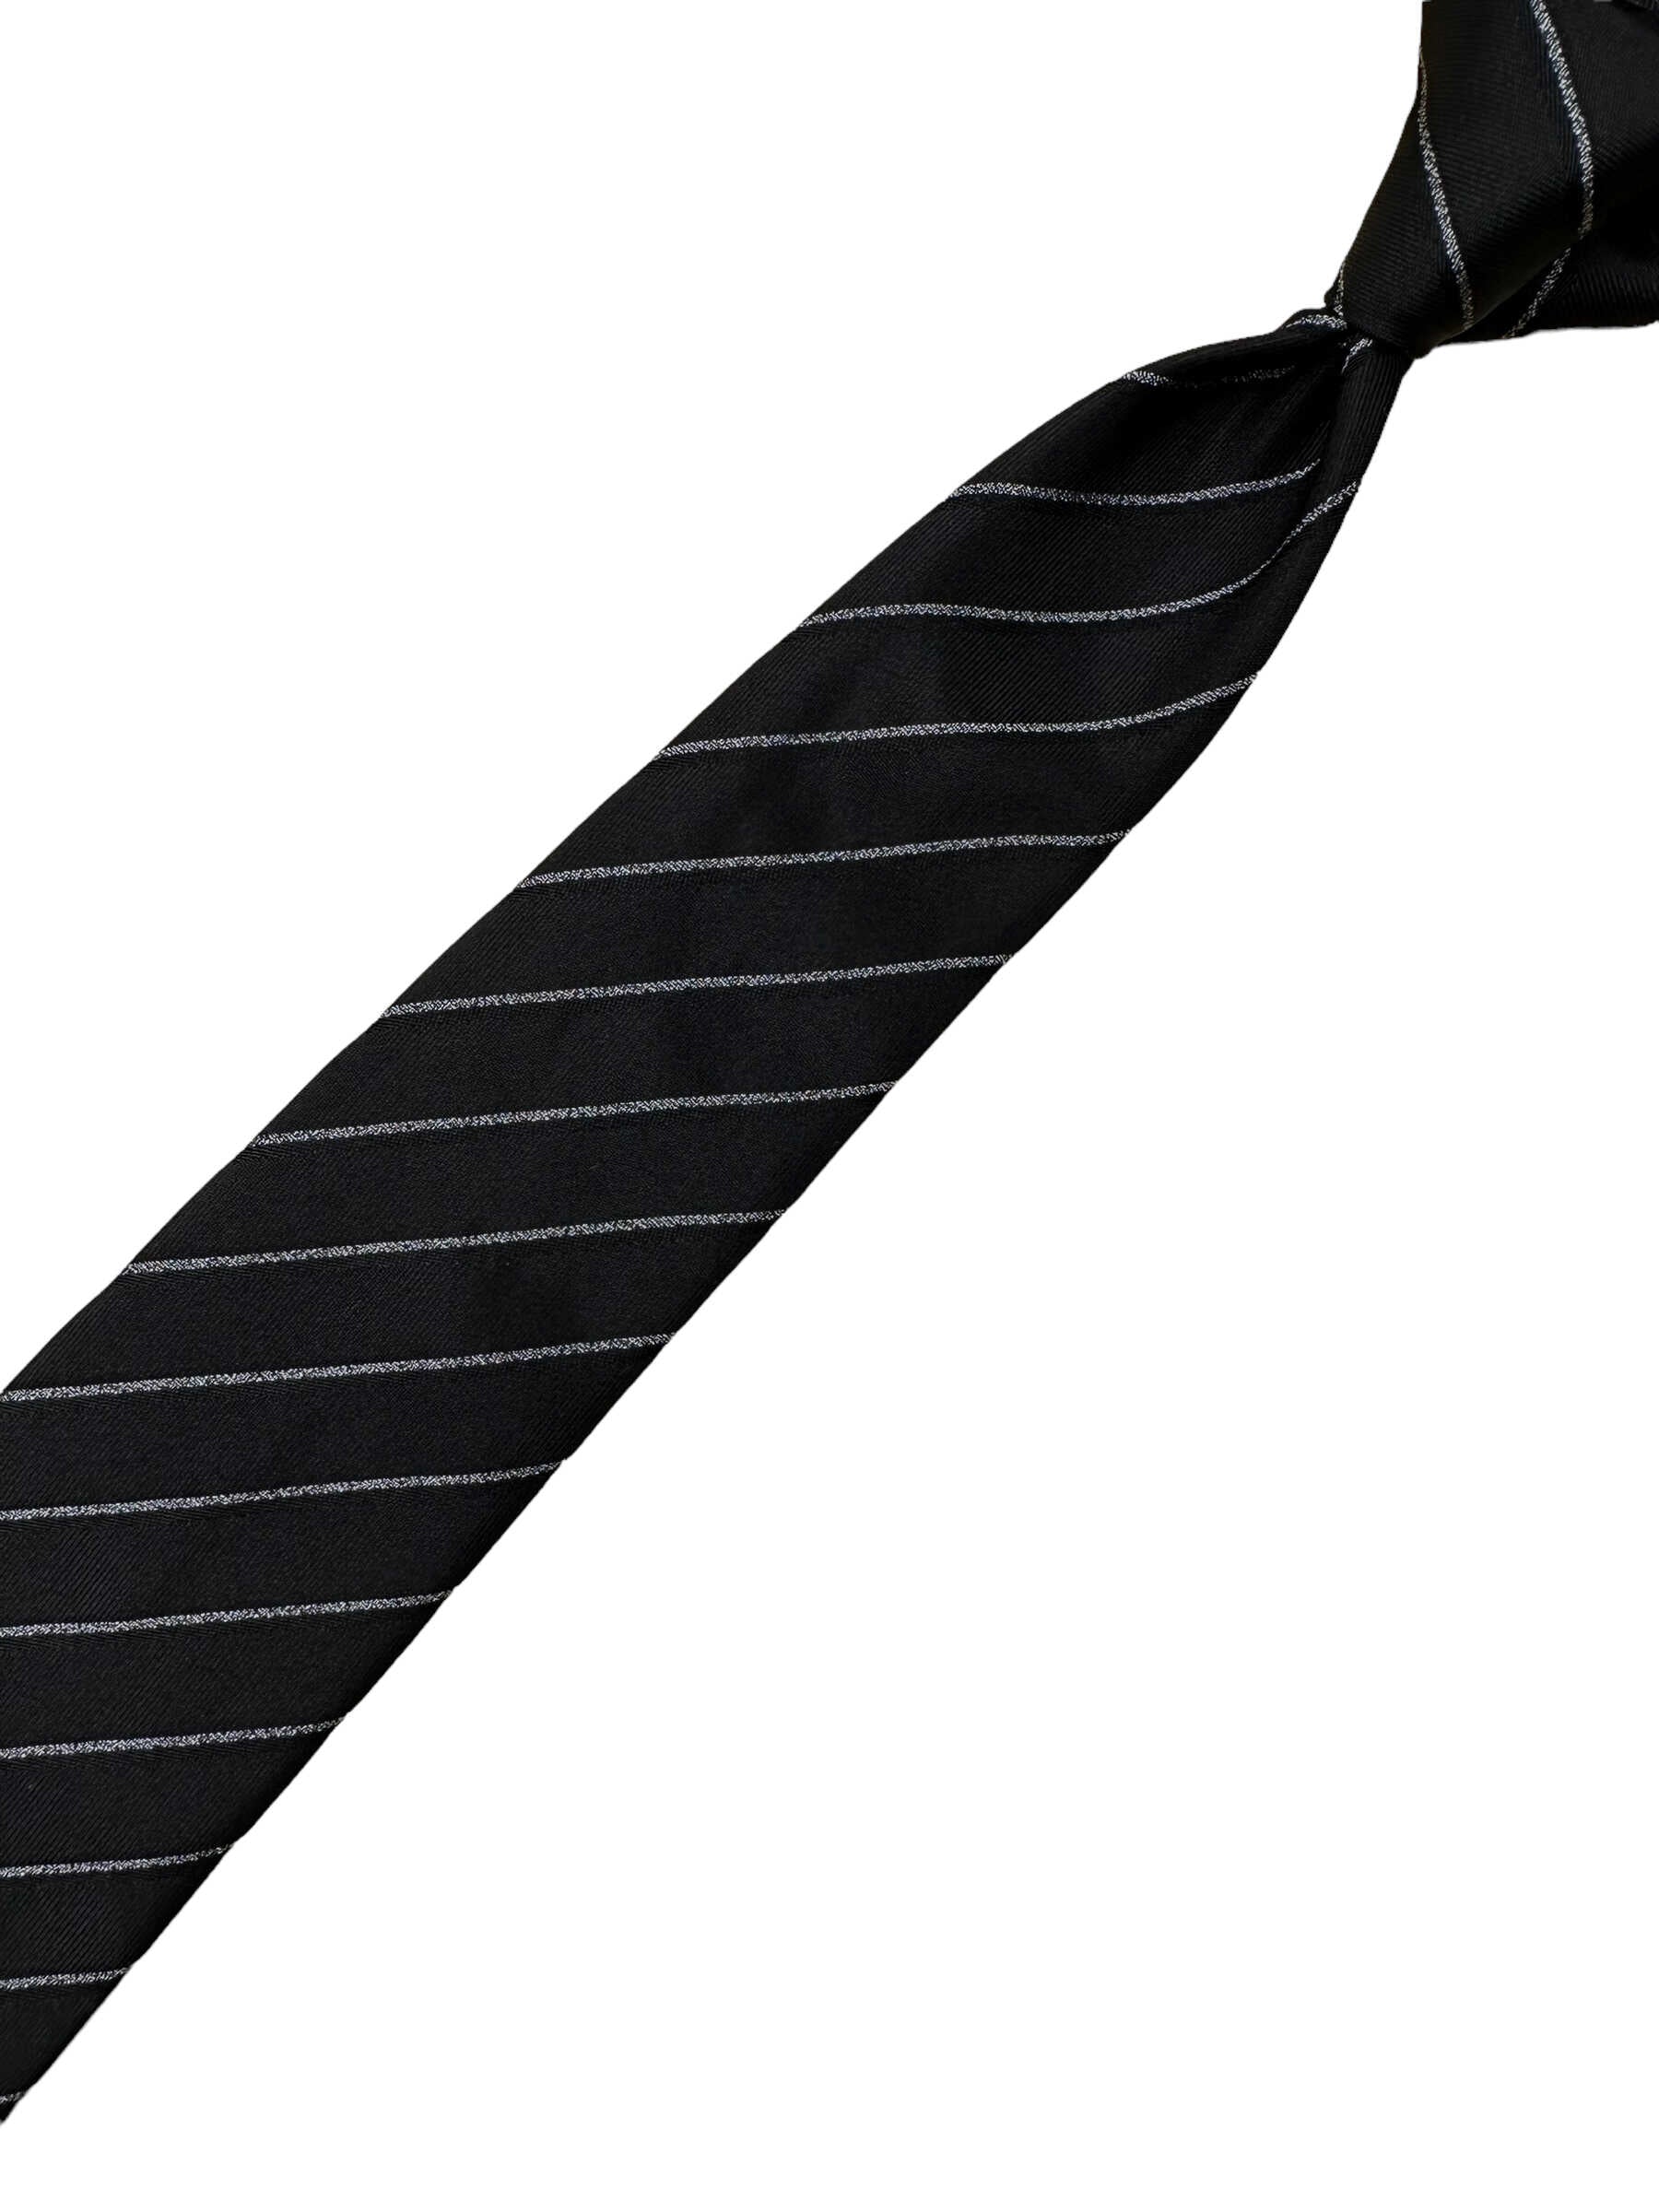 Armani Collezioni Black Striped Silk Tie - Genuine Design luxury consignment Calgary, Alberta, Canada New & pre-owned clothing, shoes, accessories.